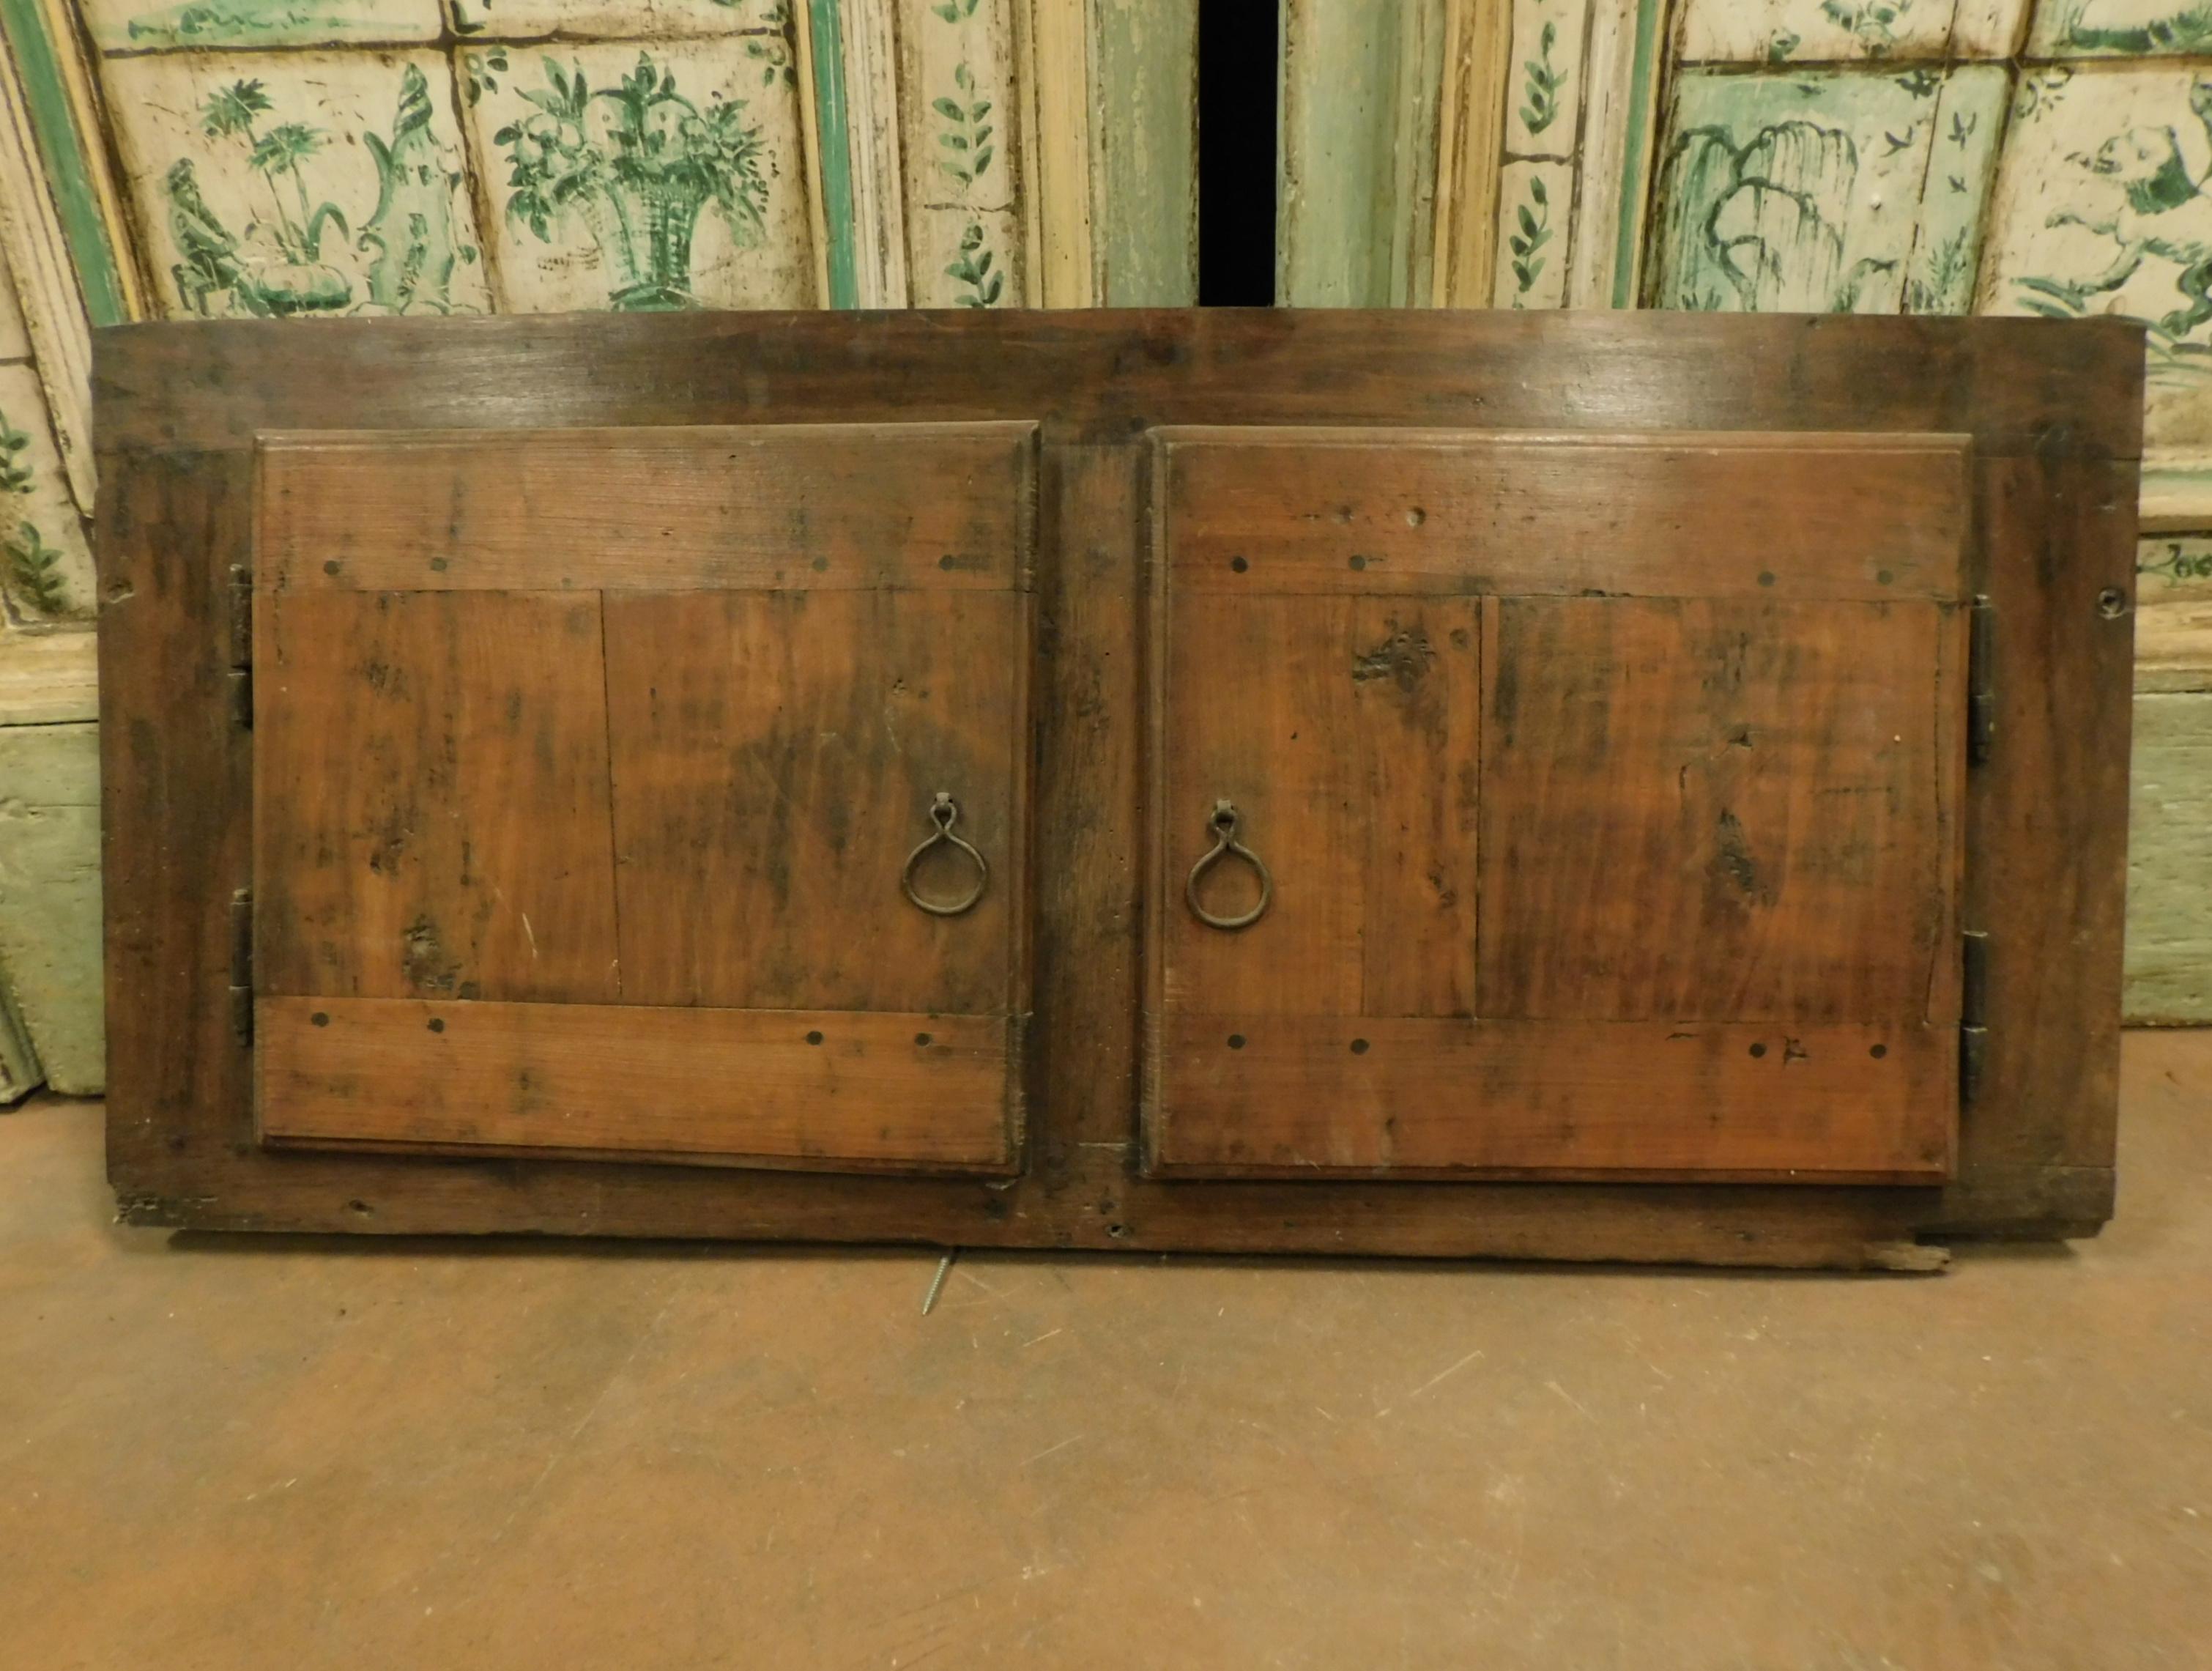 Petite armoire ancienne en peuplier avec deux portes lisses, fabriquée à la main avec des fers et des poignées d'origine, de la fin des années 1700 en provenance d'Italie.
Idéal pour réaliser un meuble dans le mur, une cuisine intégrée ou comme